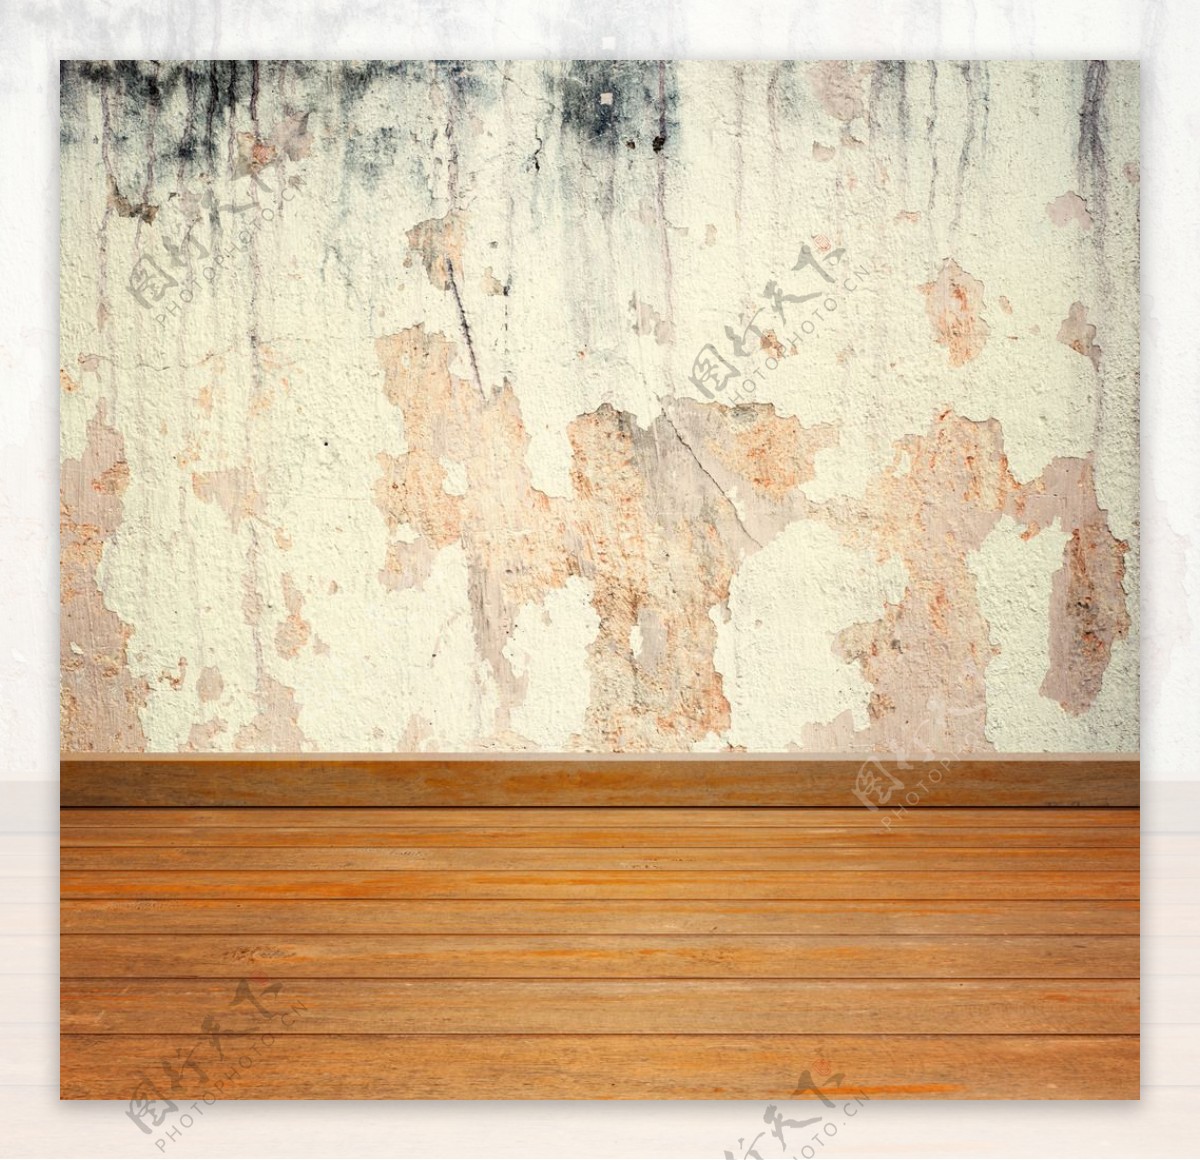 空间木纹水泥墙面背景底纹